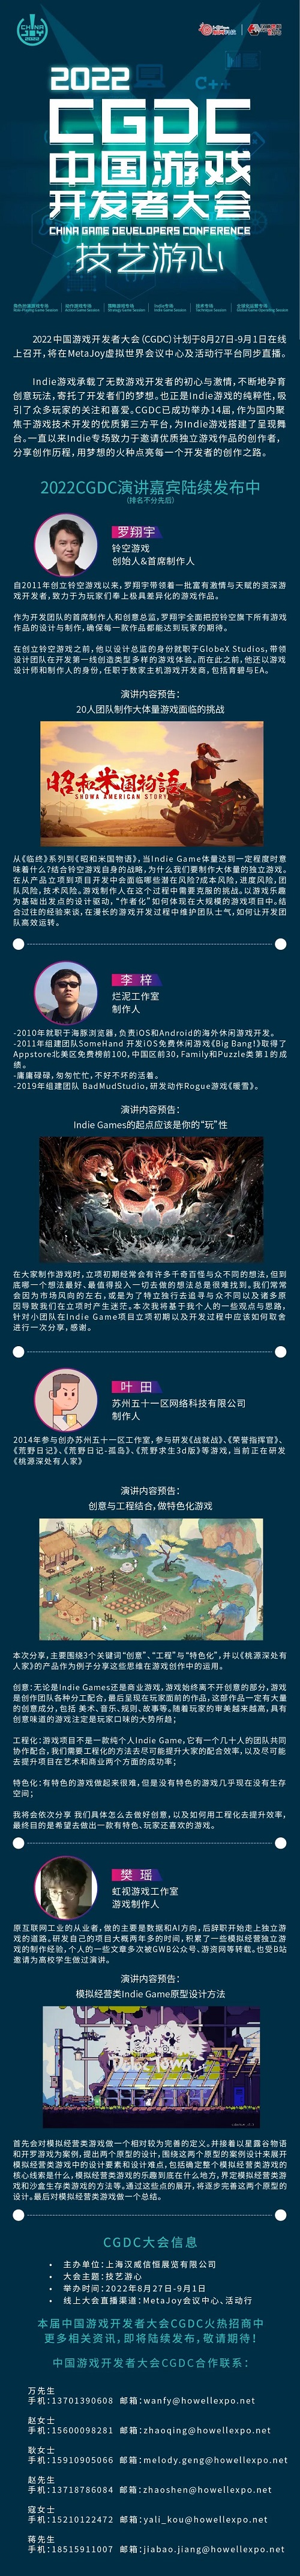 2022中国游戏开发者大会(CGDC)Indie专场部分嘉宾&话题抢先曝光!